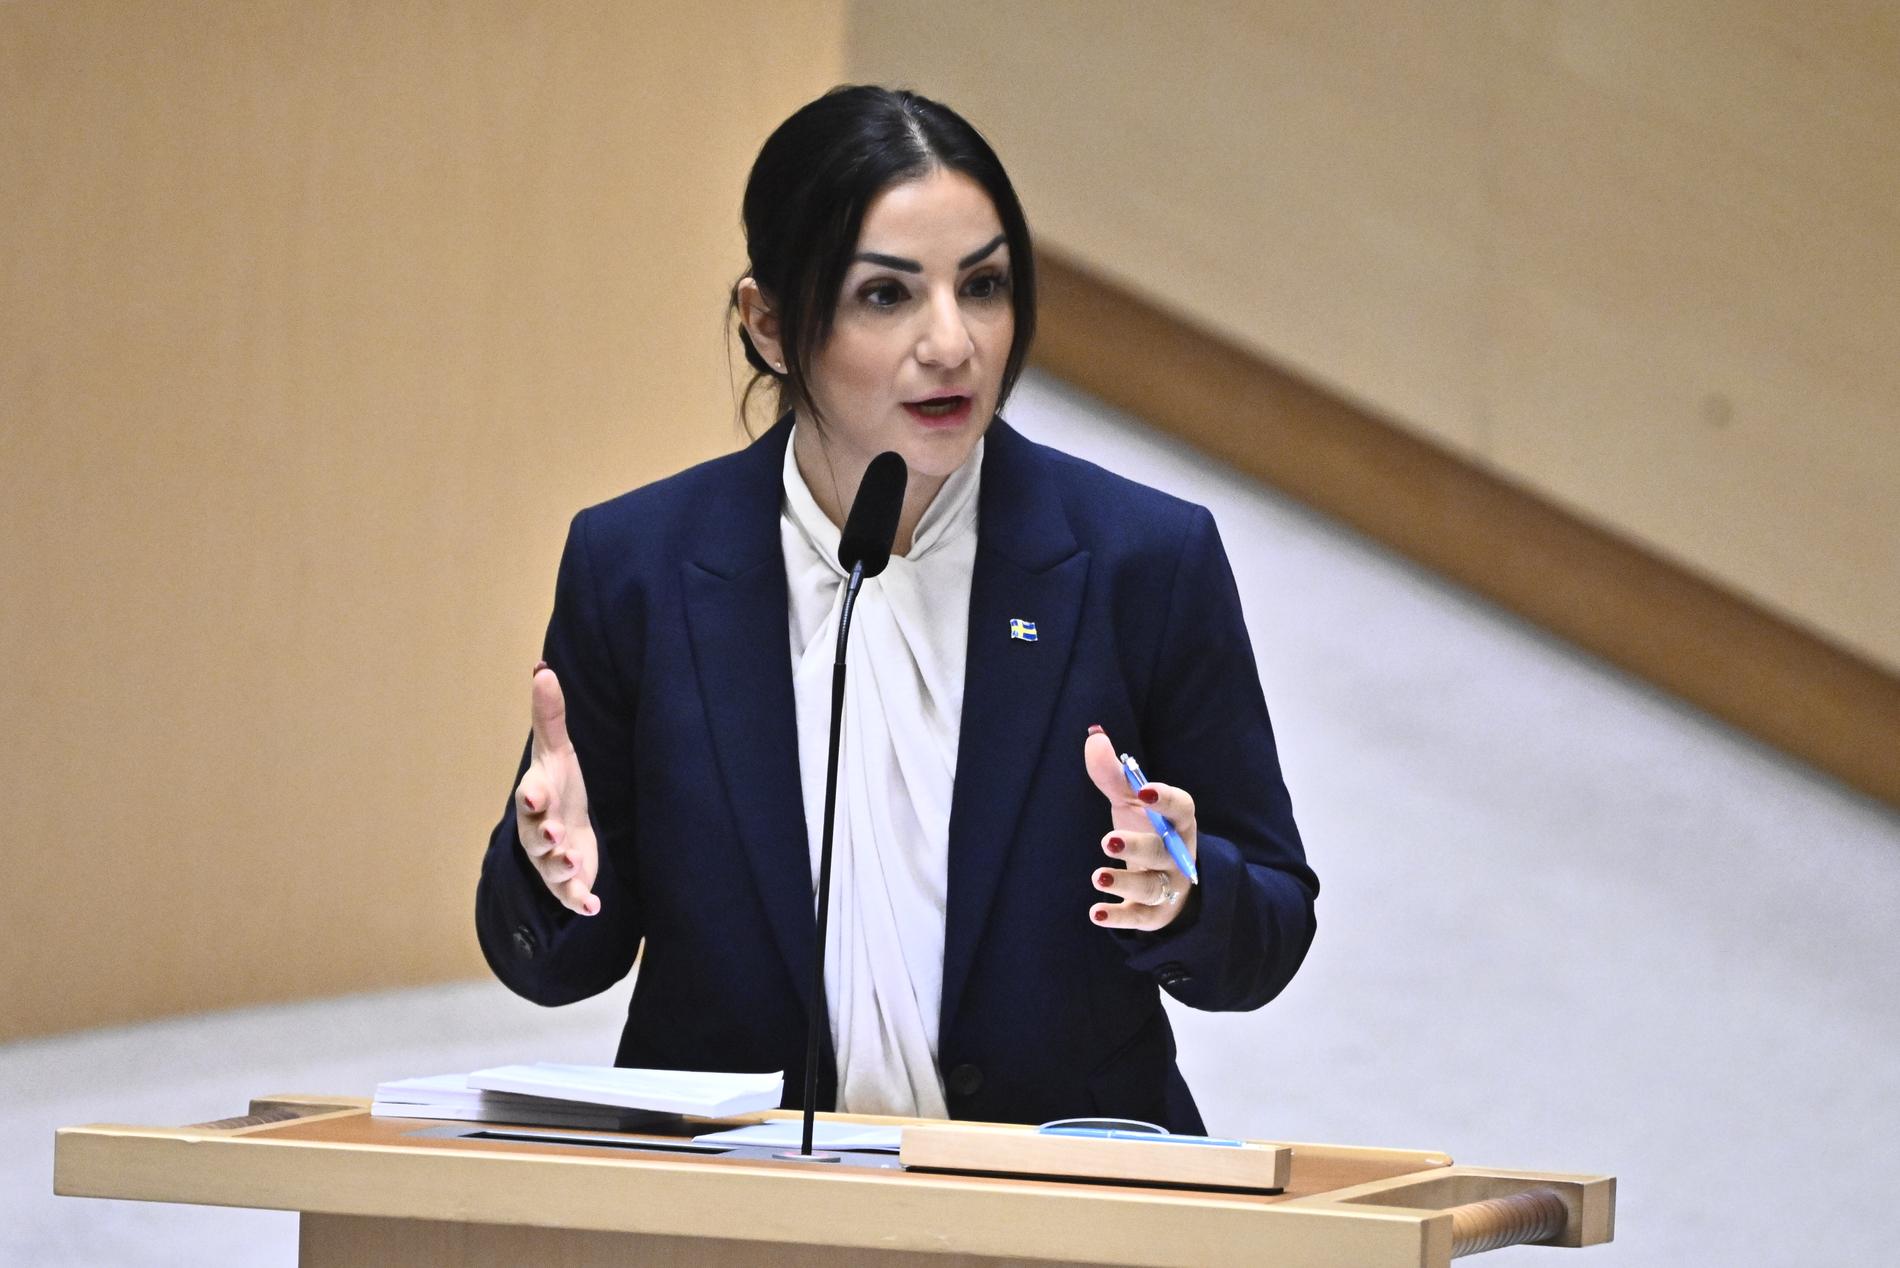 Kulturminister Parisa Liljestrand (M) under tisdagens debatt i riksdagen om antisemitismen i Sverige.